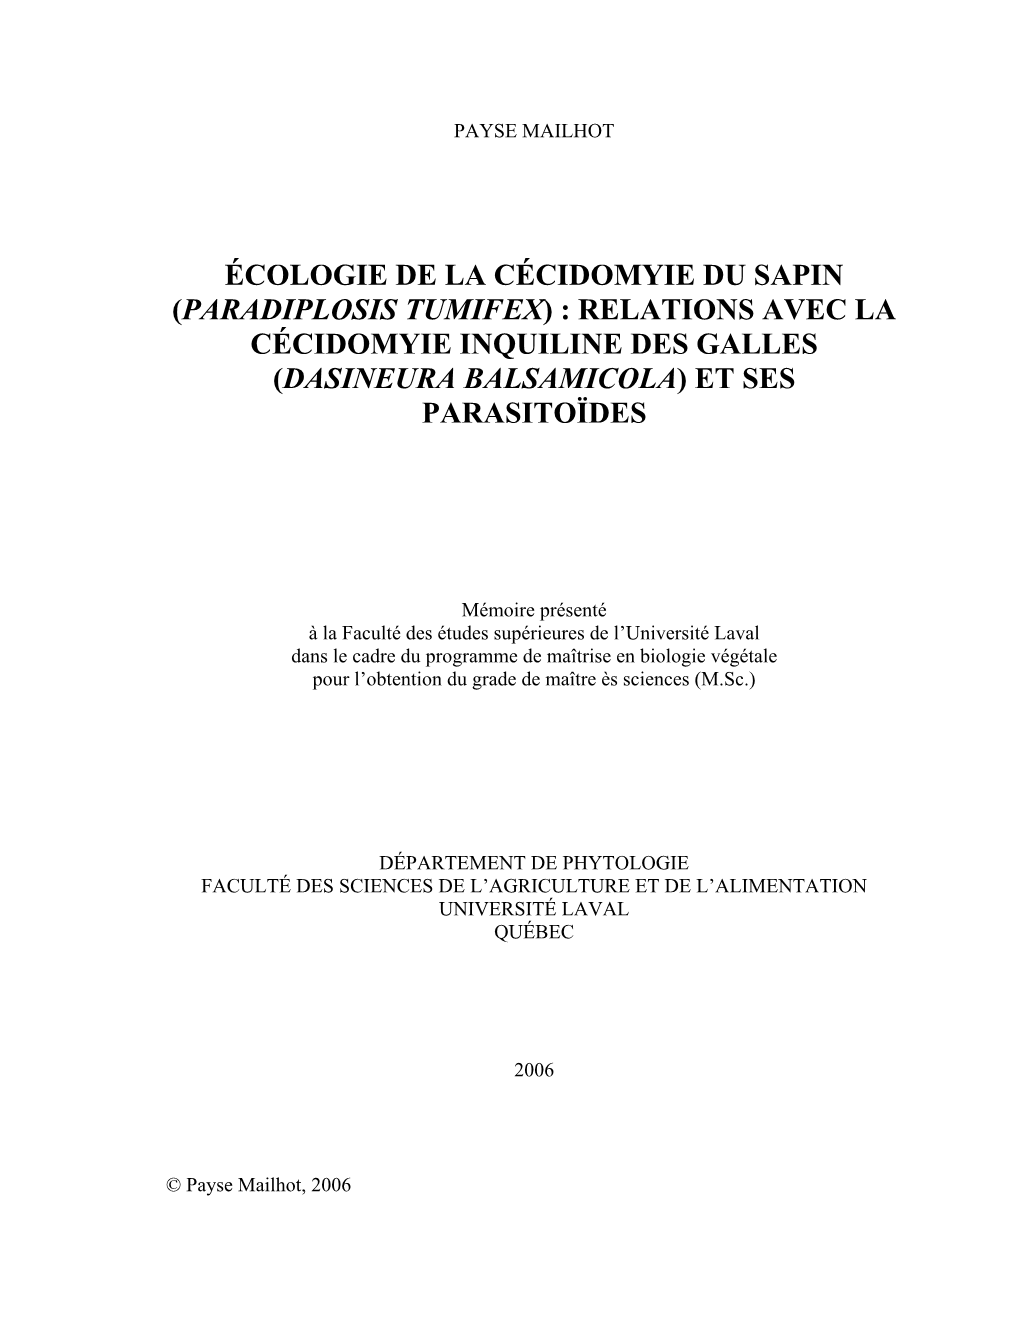 Écologie De La Cécidomyie Du Sapin (Paradiplosis Tumifex) : Relations Avec La Cécidomyie Inquiline Des Galles (Dasineura Balsamicola) Et Ses Parasitoïdes